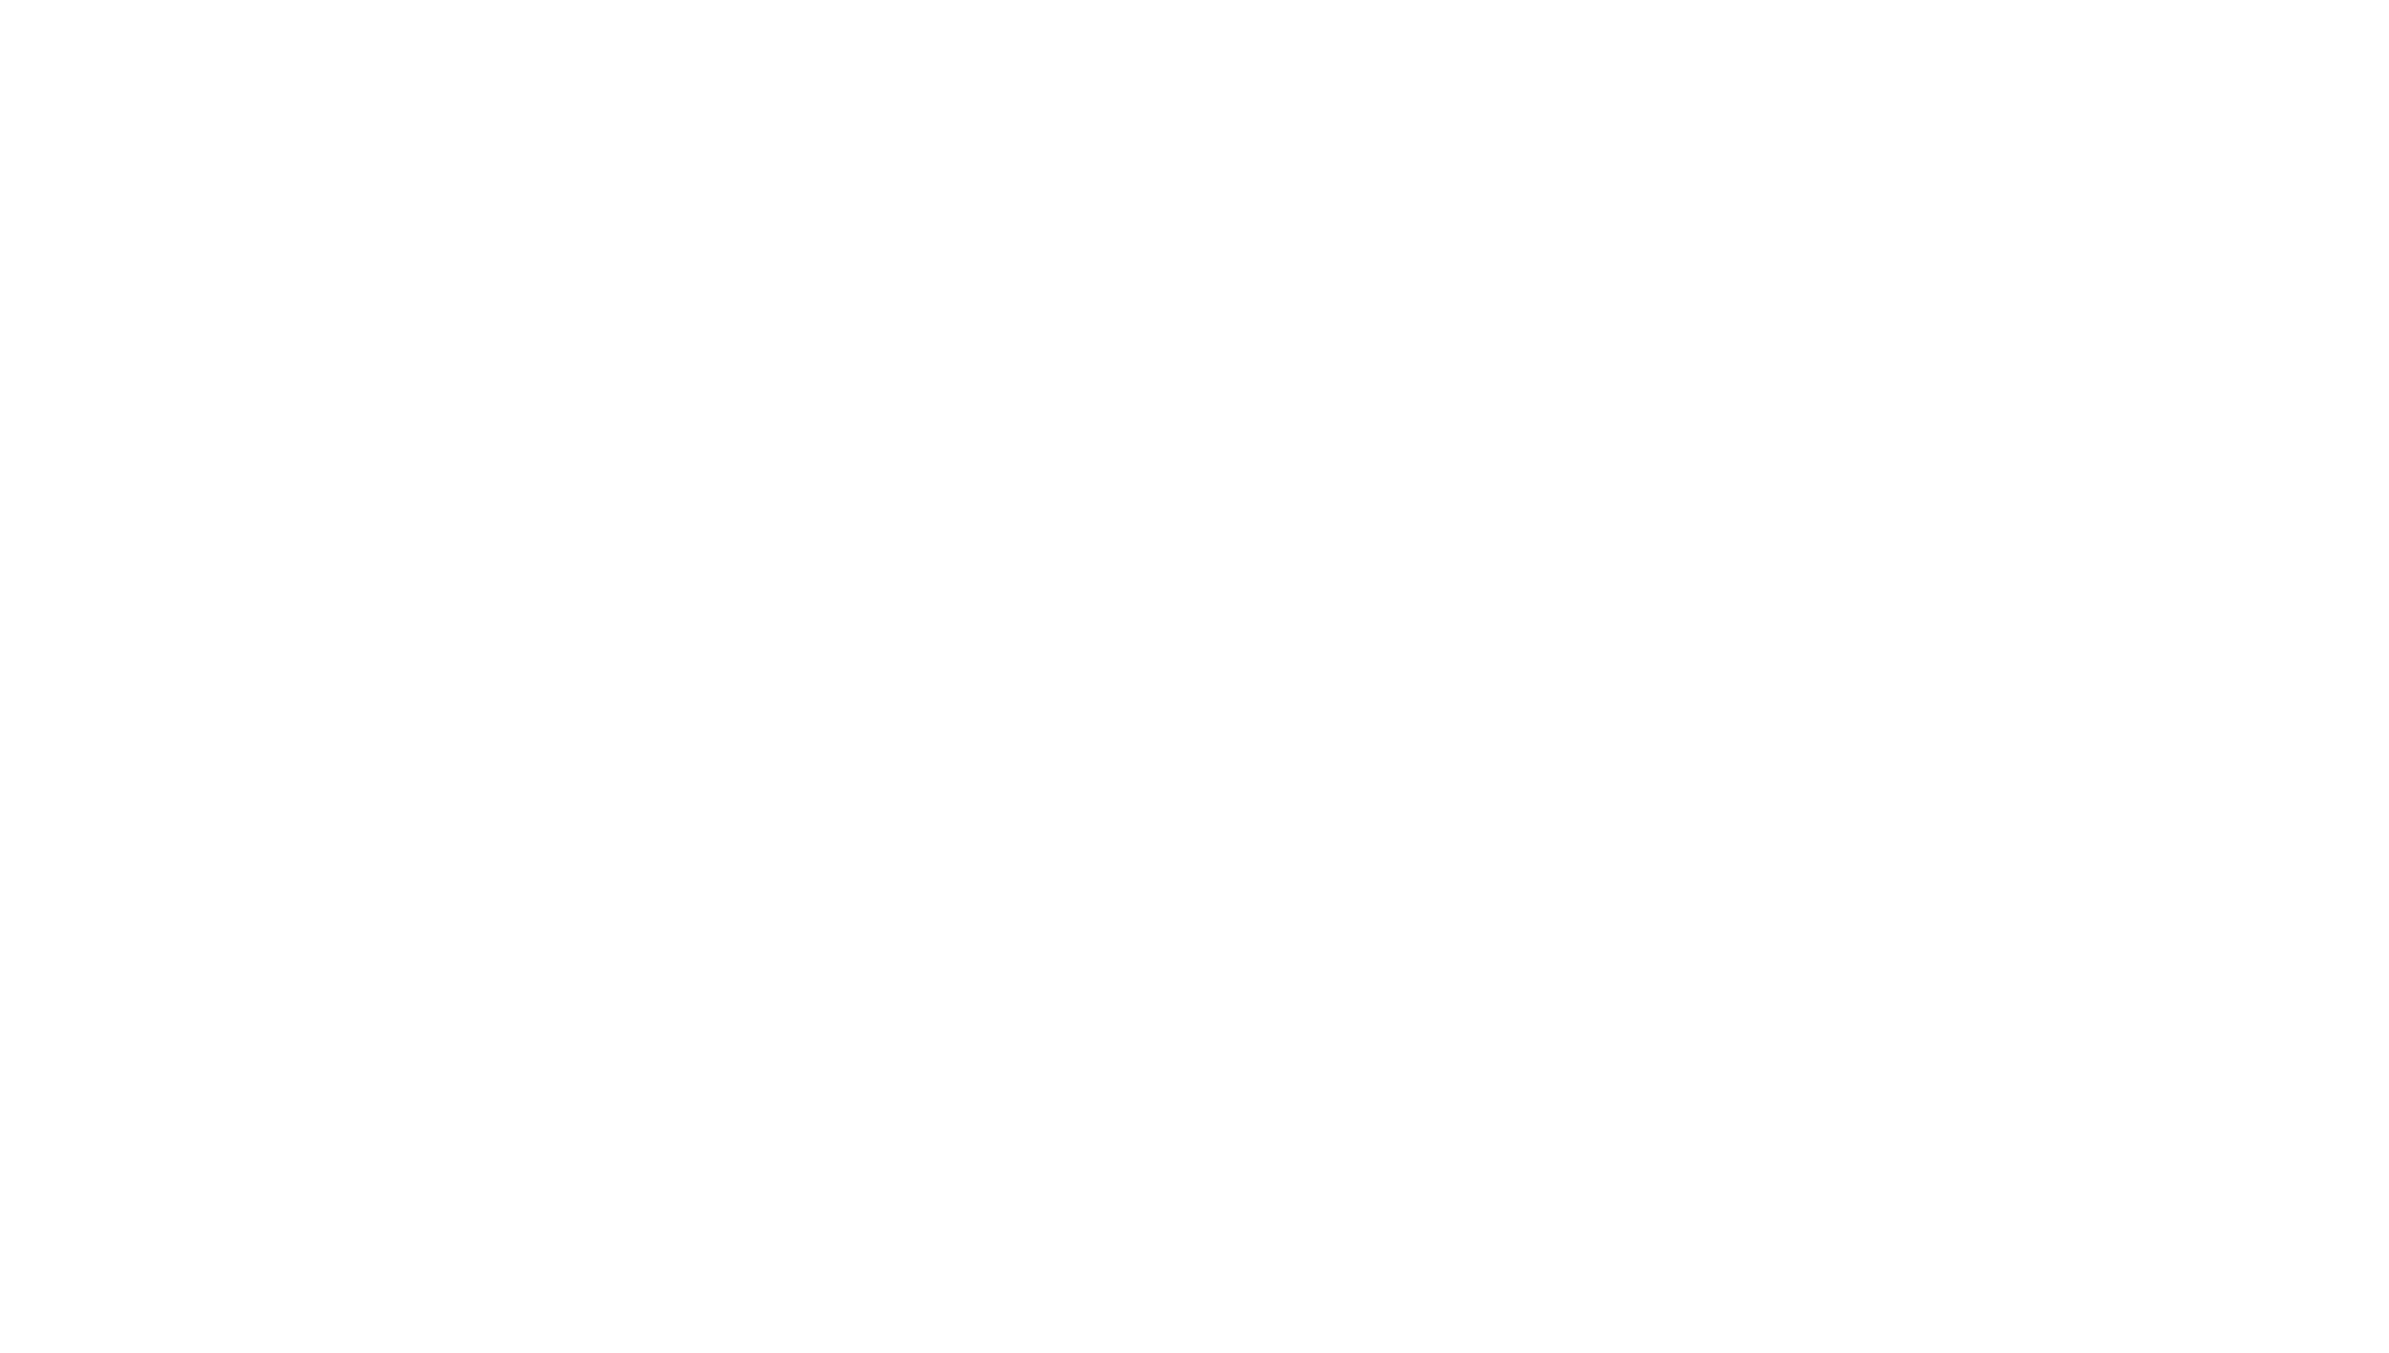 Airlock Laurels Rome Web Awards Scifi.png